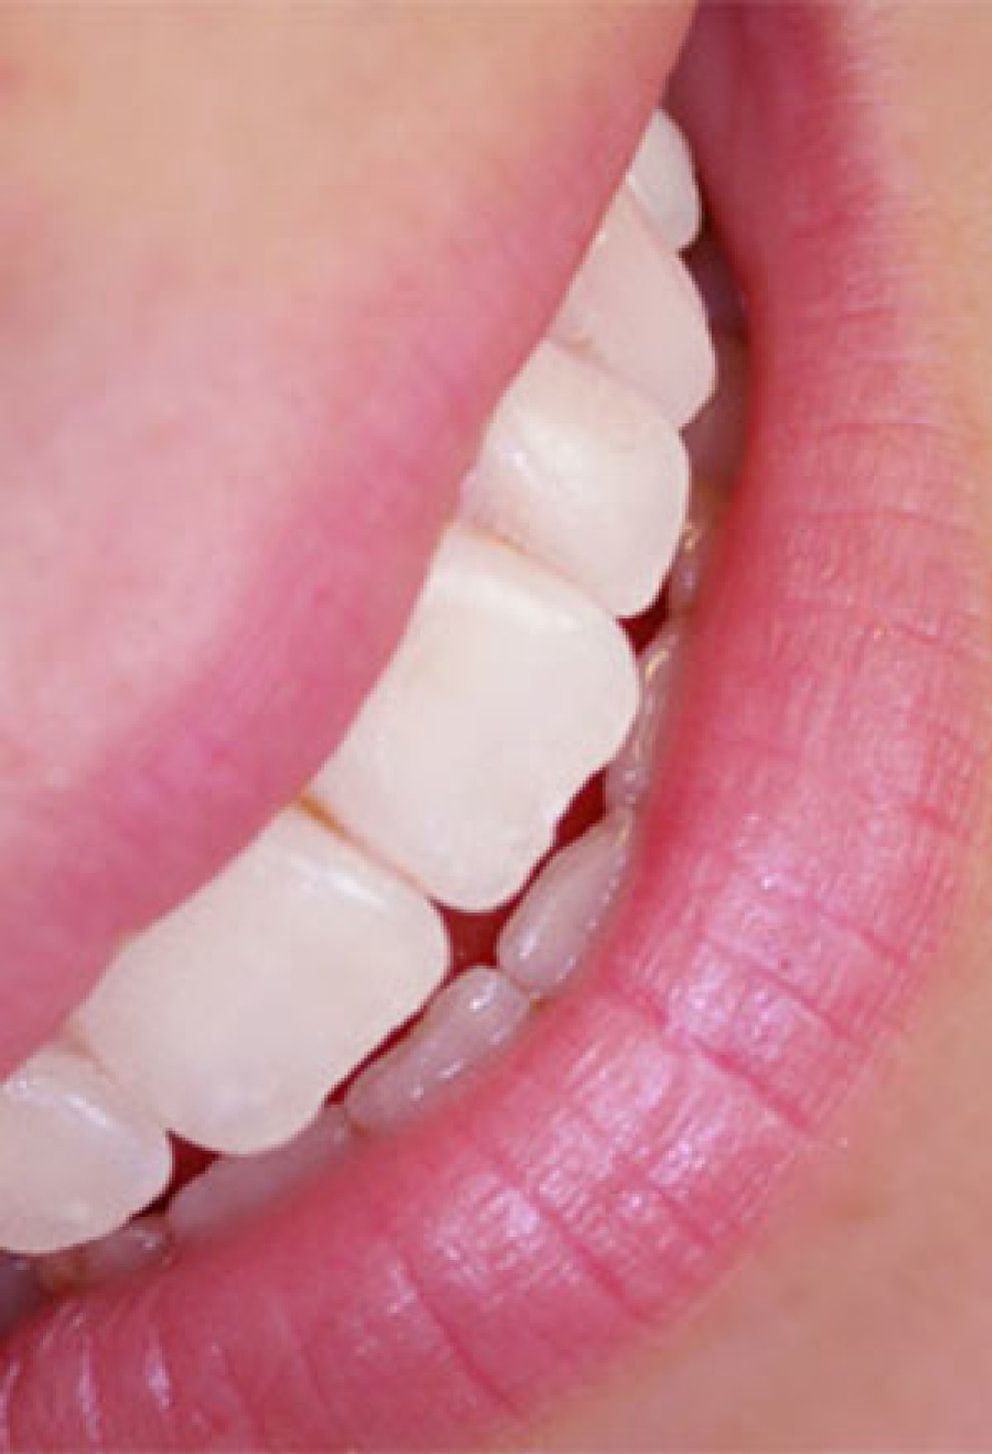 Foto: La revolución del gen que controla el esmalte dental